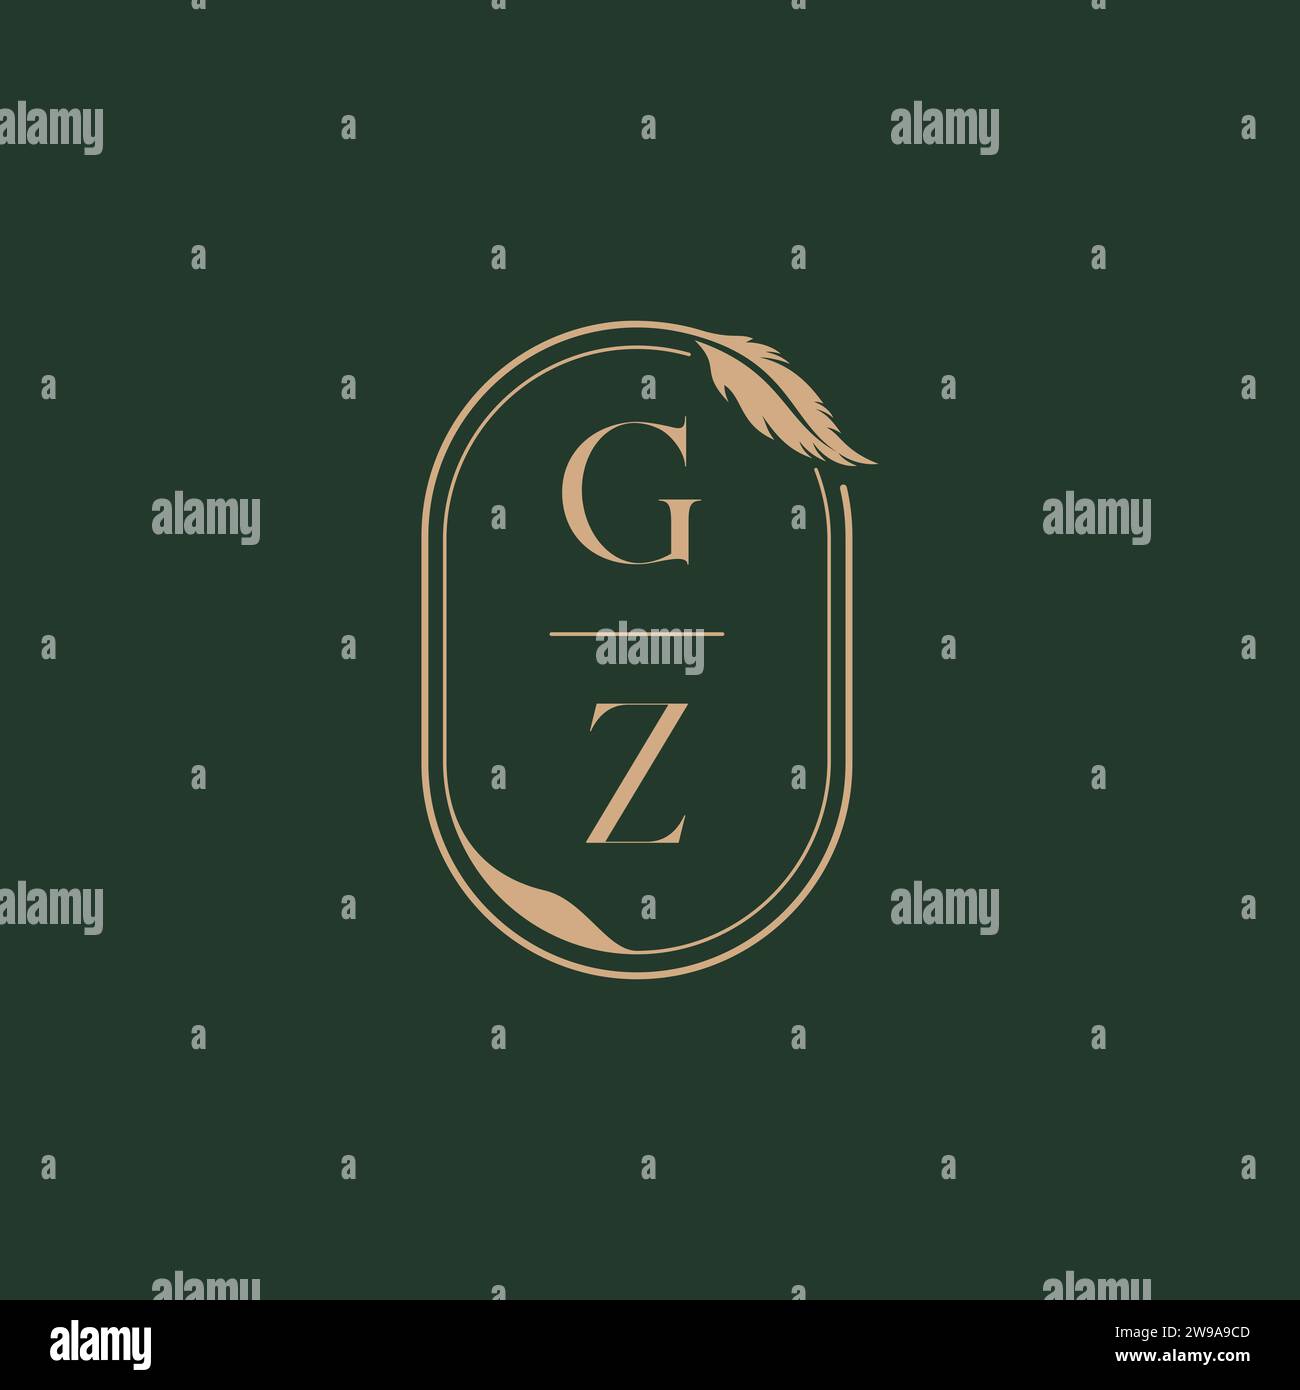 GZ feather concept wedding monogram logo design ideas as inspiration Stock Vector